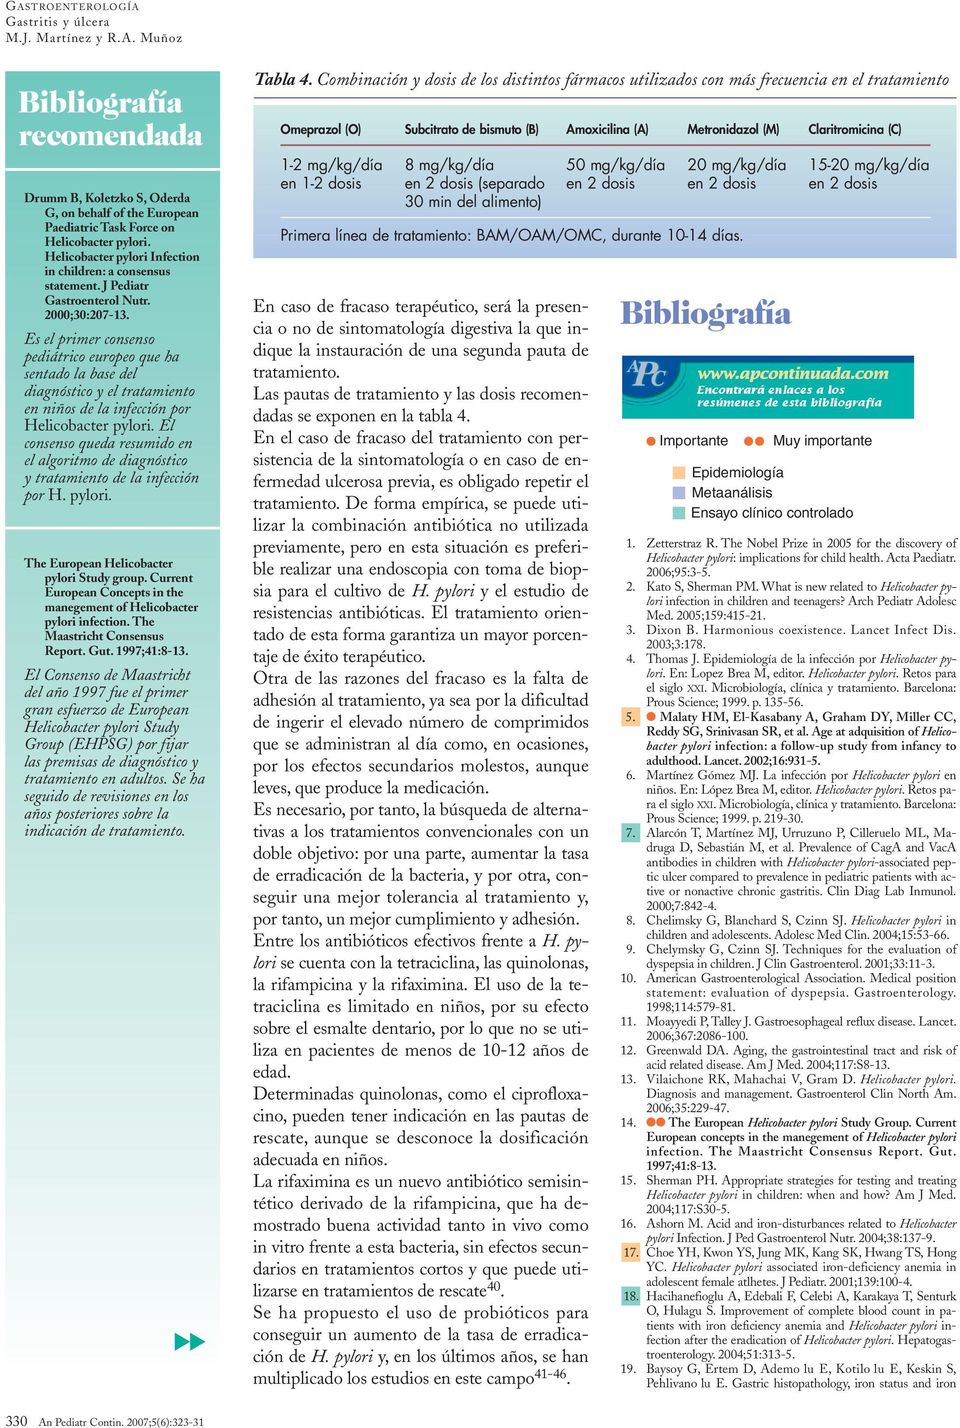 el consenso queda resumido en el algoritmo de diagnóstico y tratamiento de la infección por H. pylori. The European Helicobacter pylori Study group.